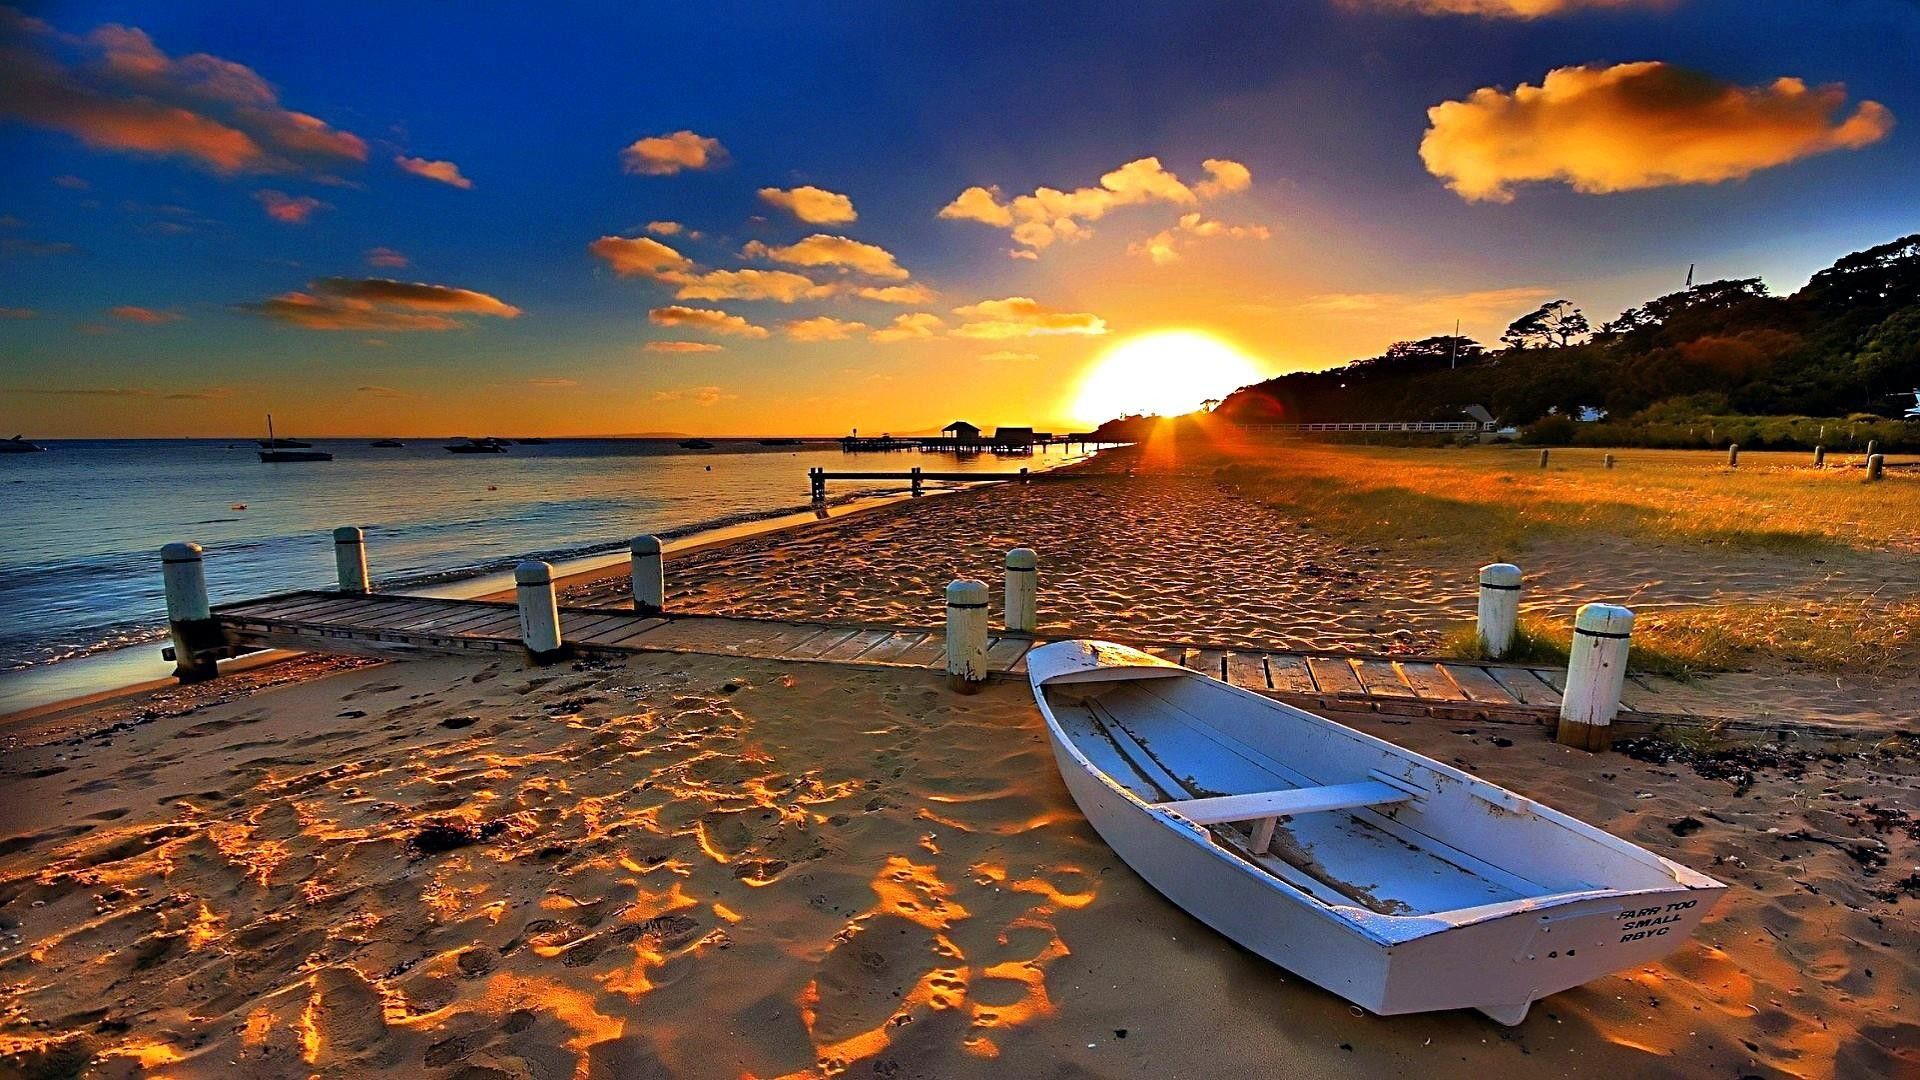 Beach Sunset HD Wallpapers - Top Những Hình Ảnh Đẹp